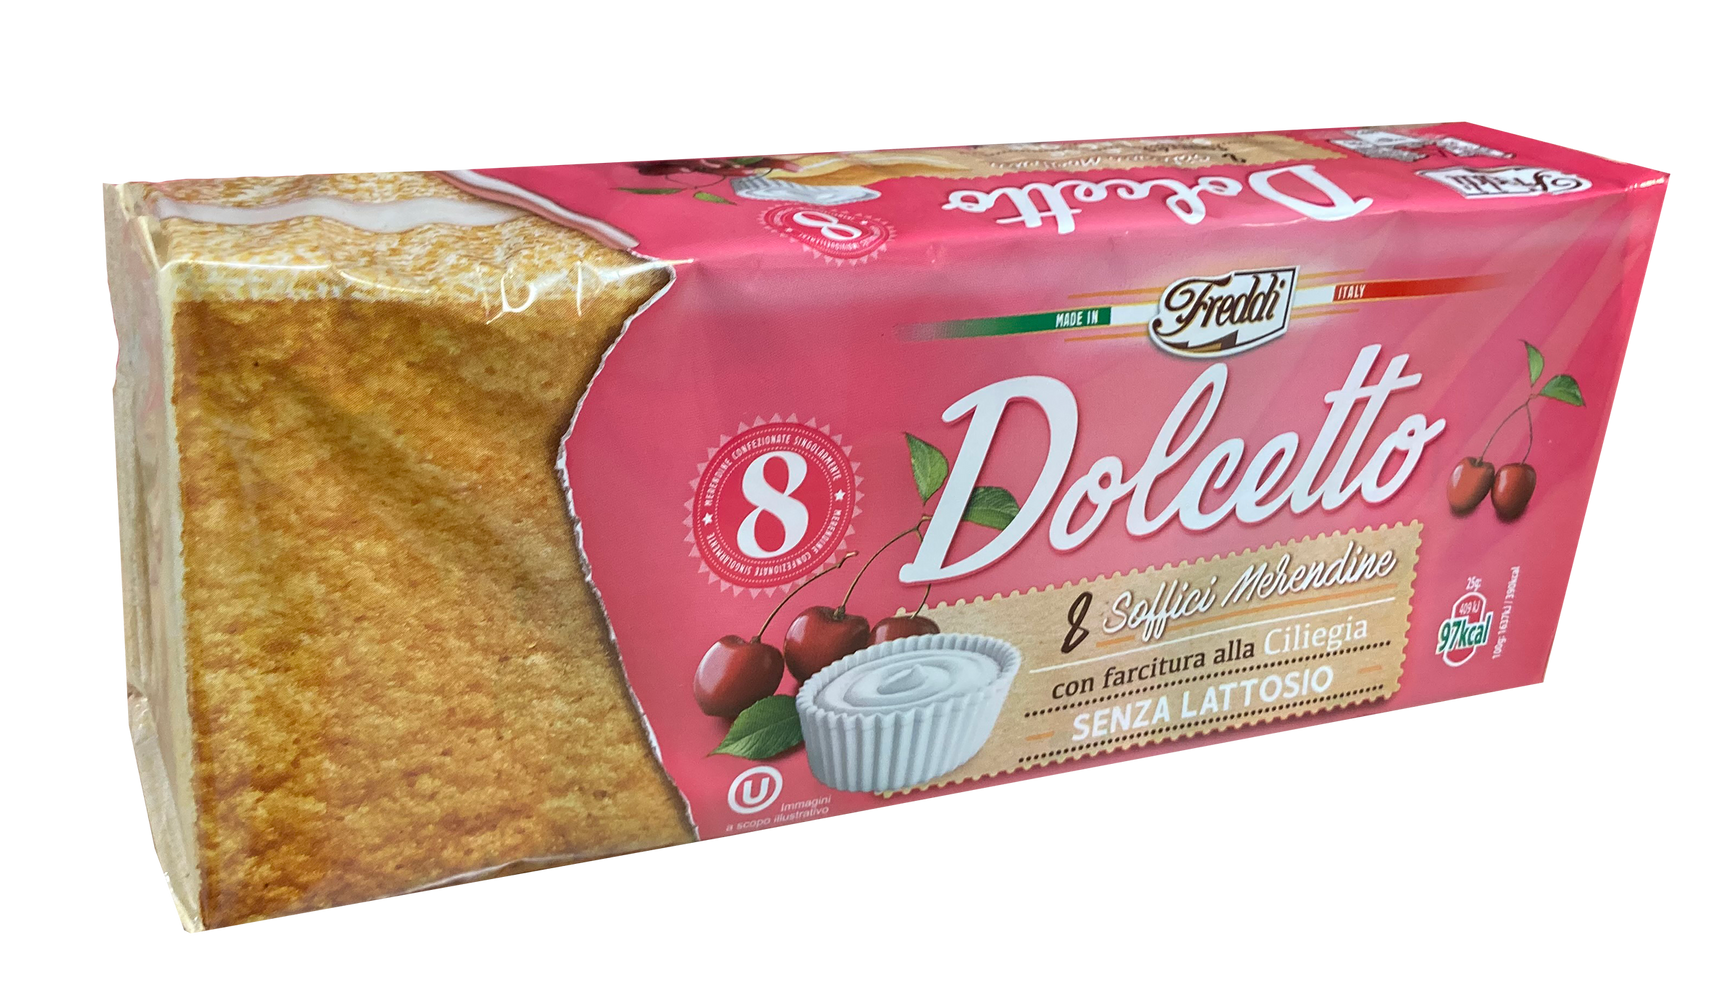 Freddi Dolcetto Cake, Cherry, 8 ct